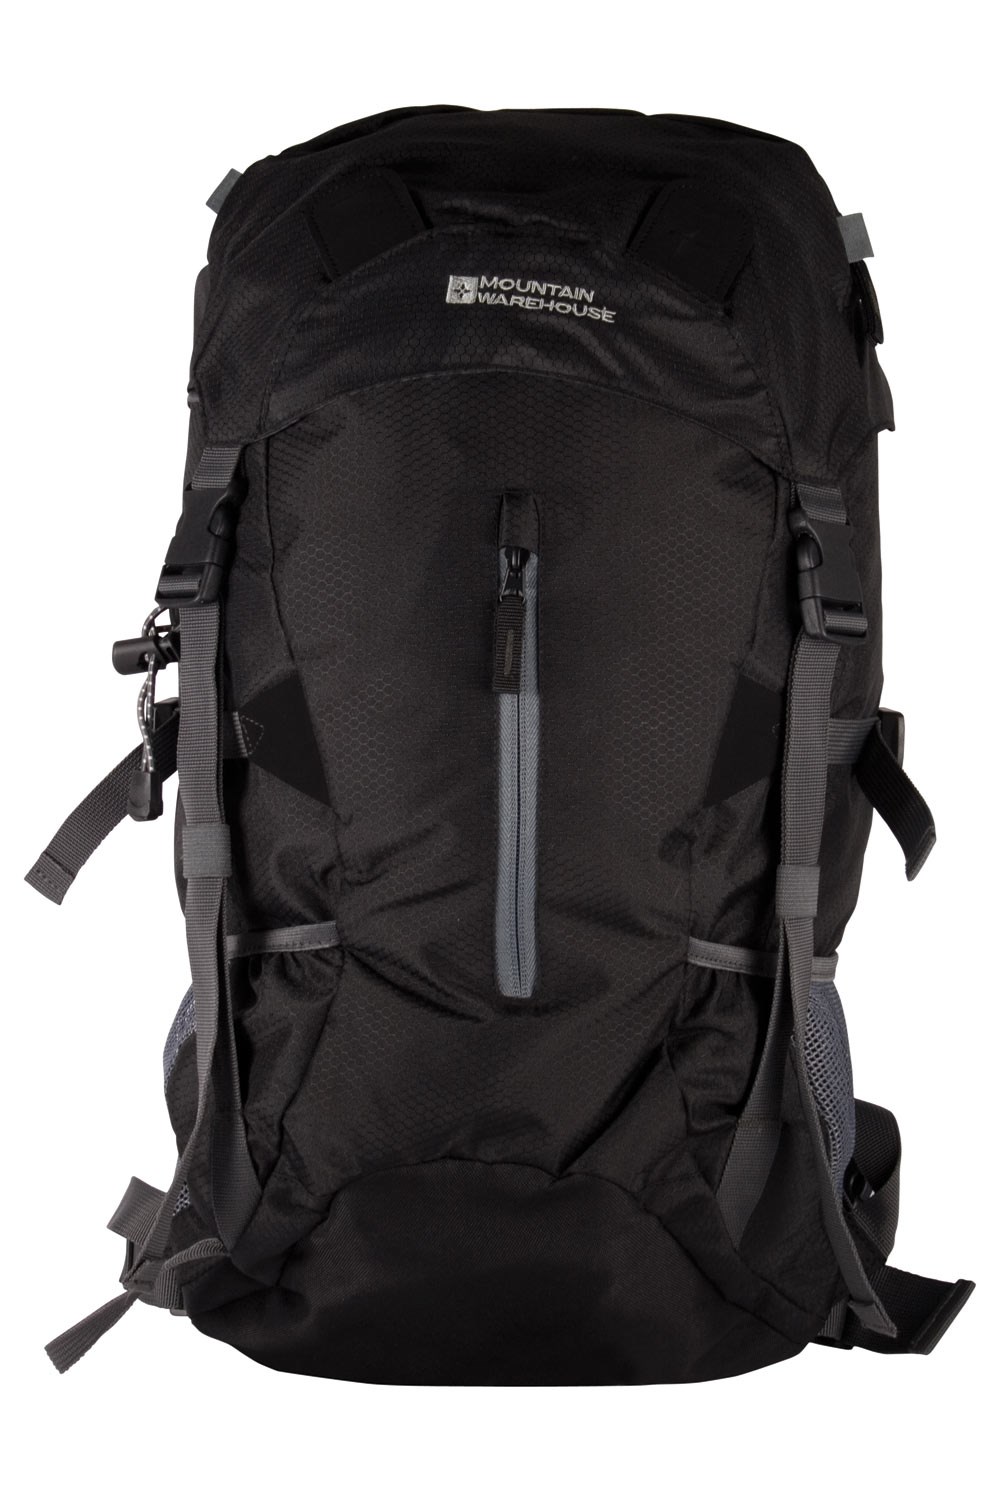 Mountain Warehouse Saker 35L Backpack Black